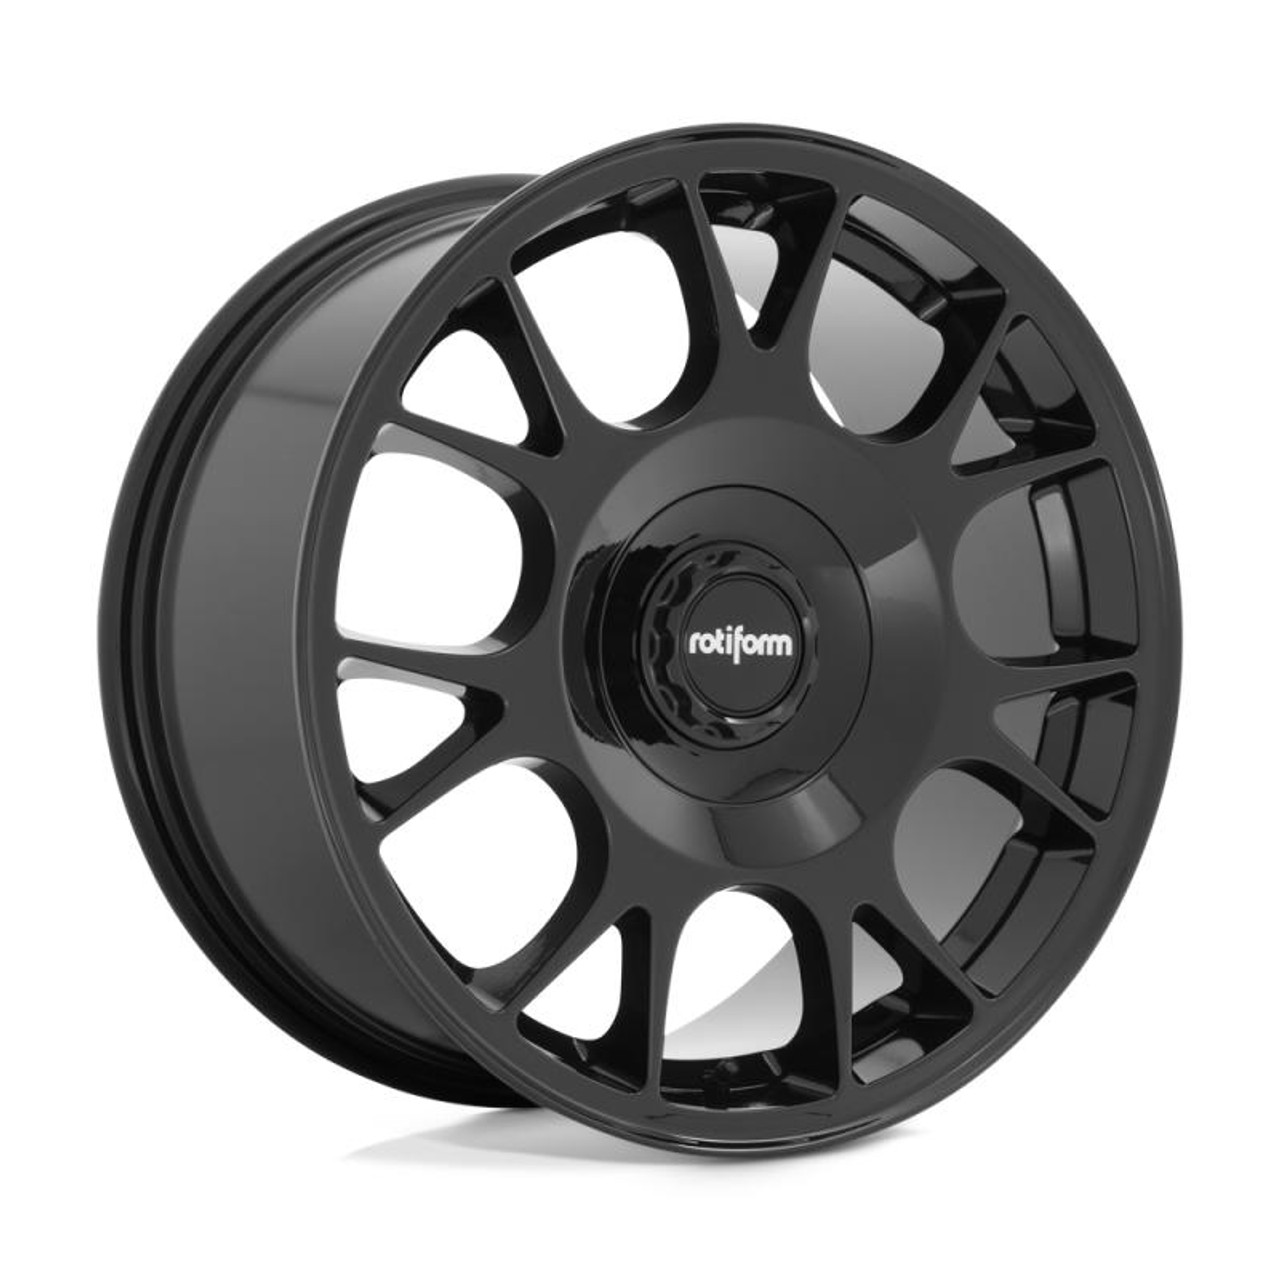  Rotiform R187 TUF-R Wheel 20x8.5 5x108/5x120 35 Offset - Gloss Black - R187208523+35 